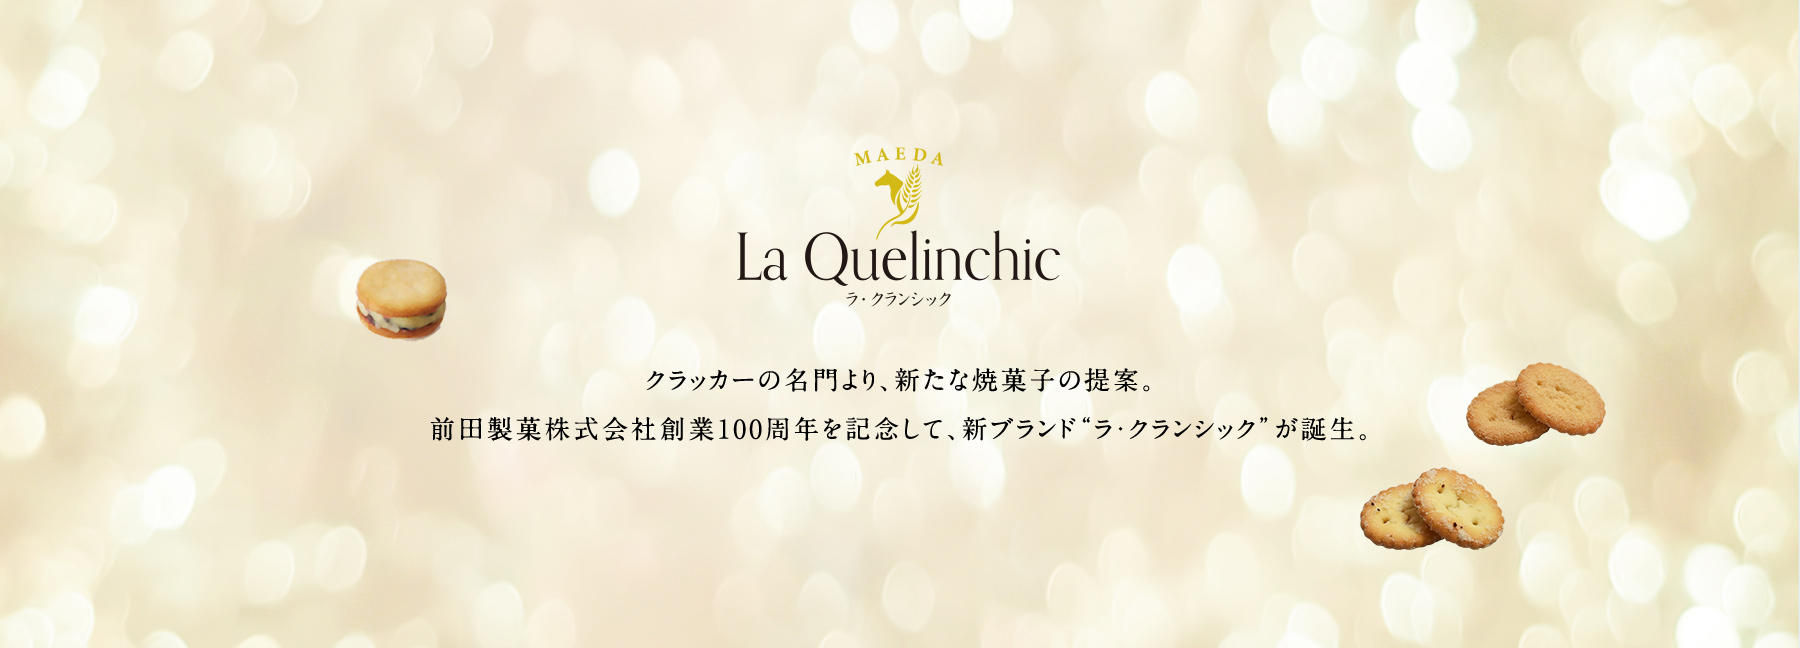 クラッカーの名門より、新たな焼菓子の提案。前田製菓株式会社創業100周年を記念して、新ブランド“ラ・クランシック”が誕生。